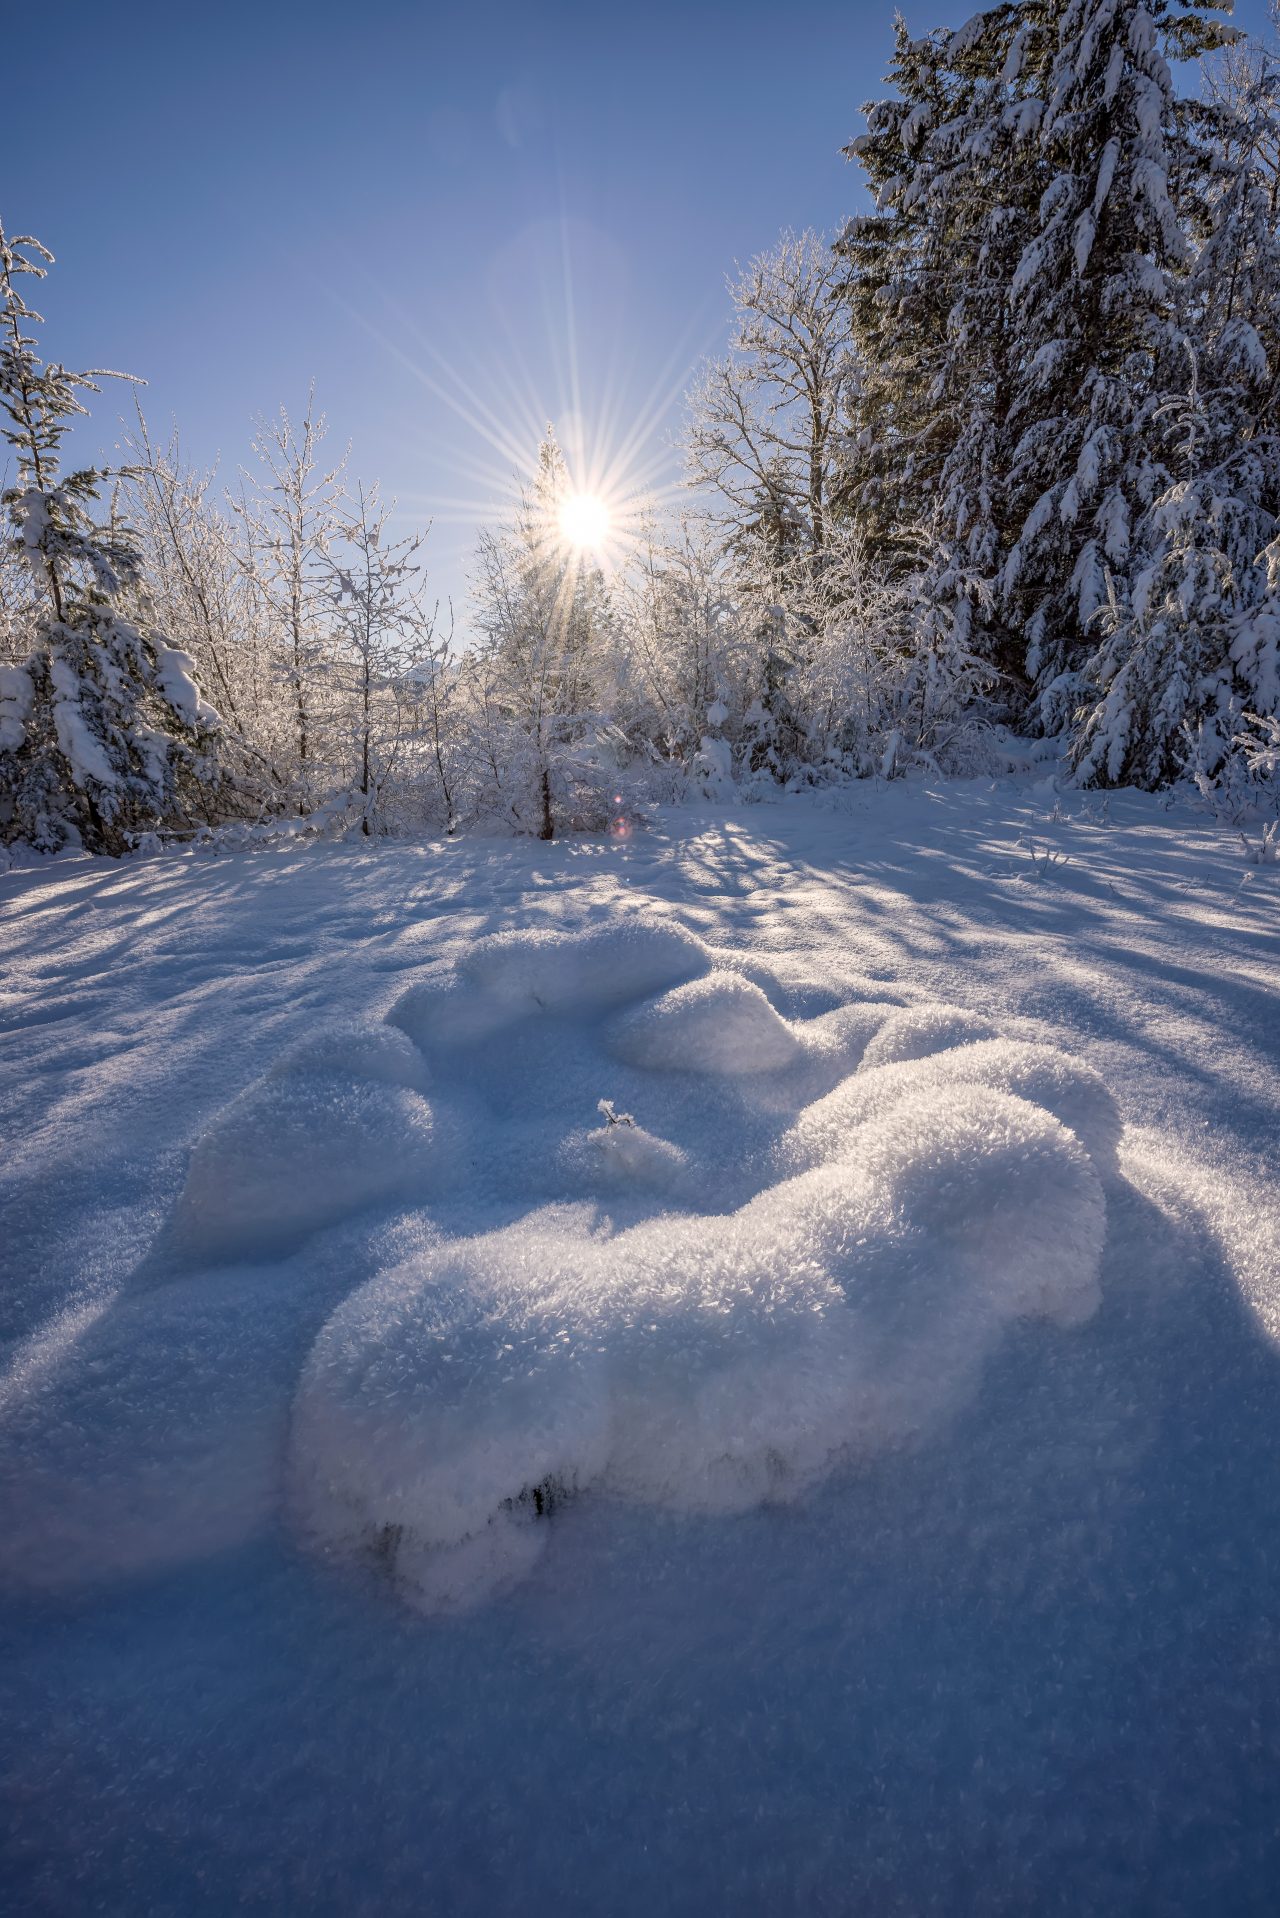 Squamish Bald Eagles : 2016-01-02 : Nikon D810 & Nikkor 14-24 : Frozen Landscape